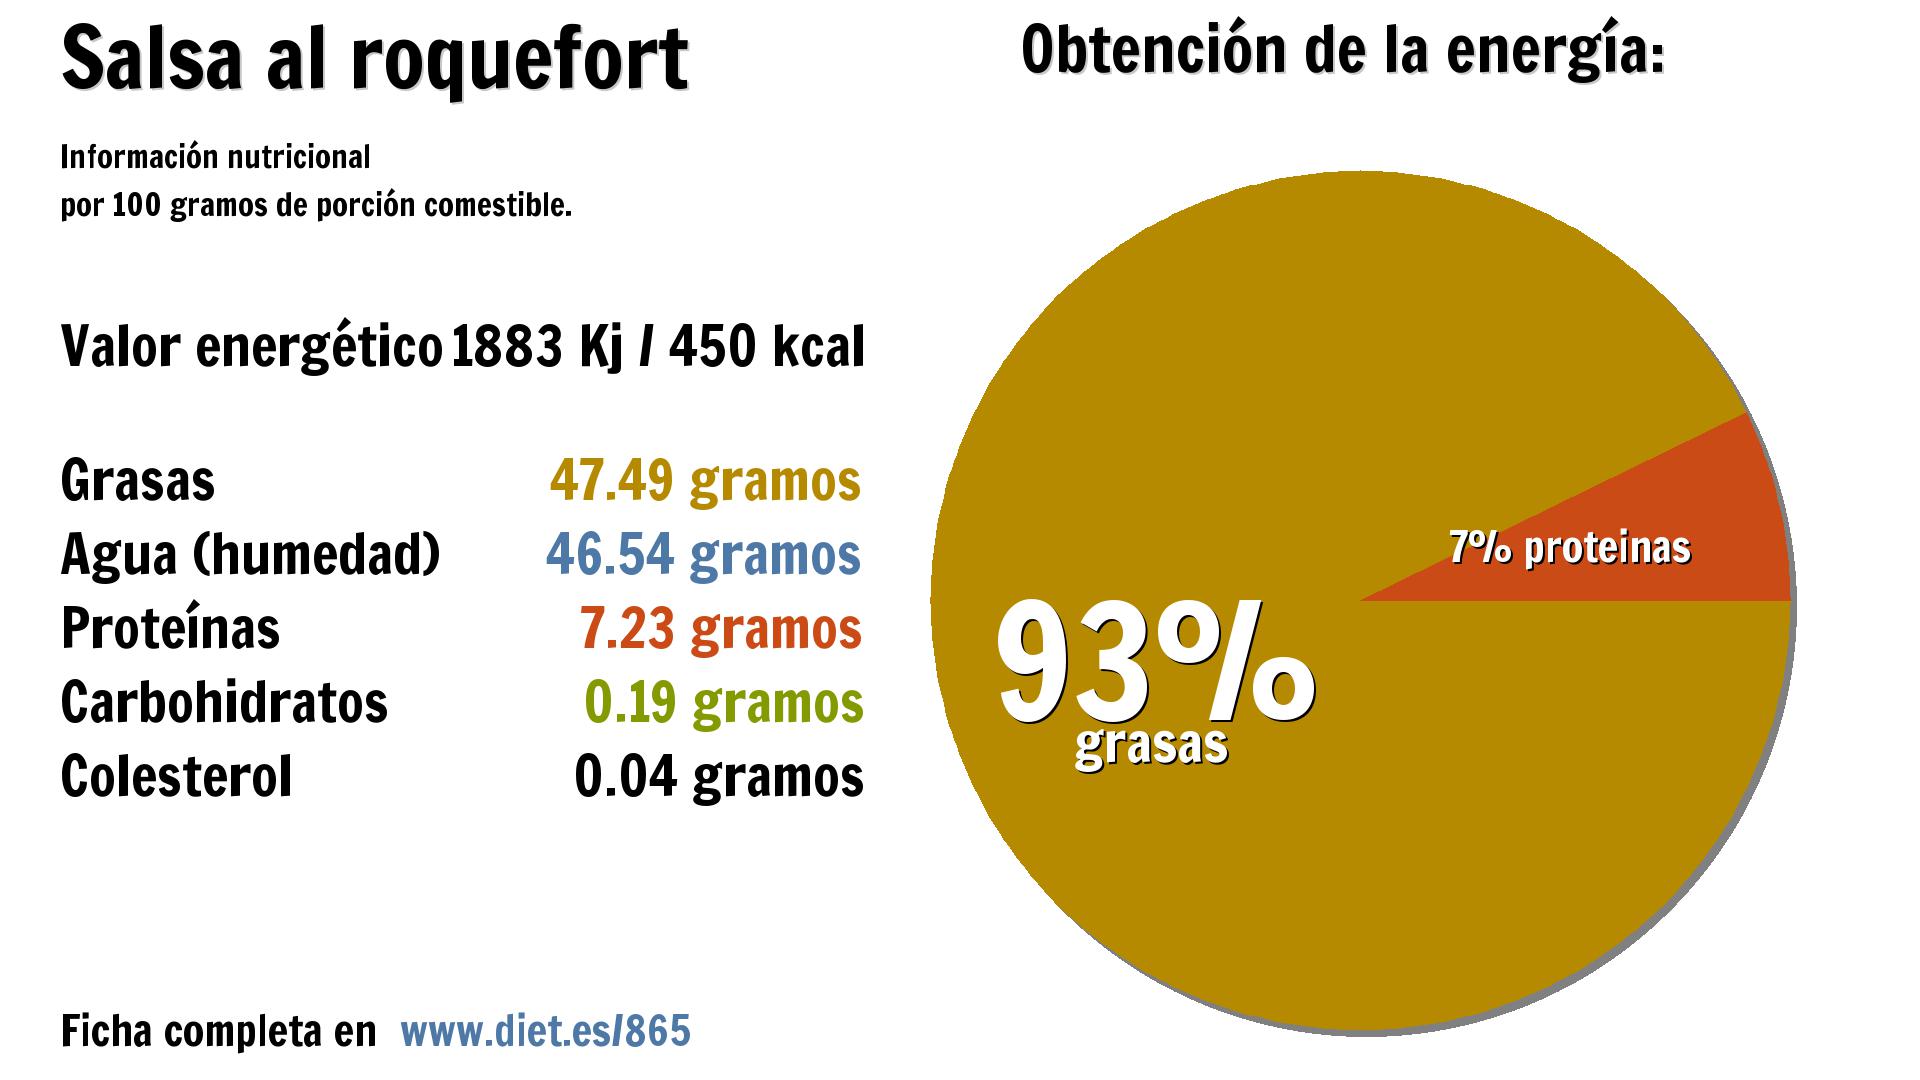 Salsa al roquefort: energía 1883 Kj, grasas 47 g., agua 47 g. y proteínas 7 g.